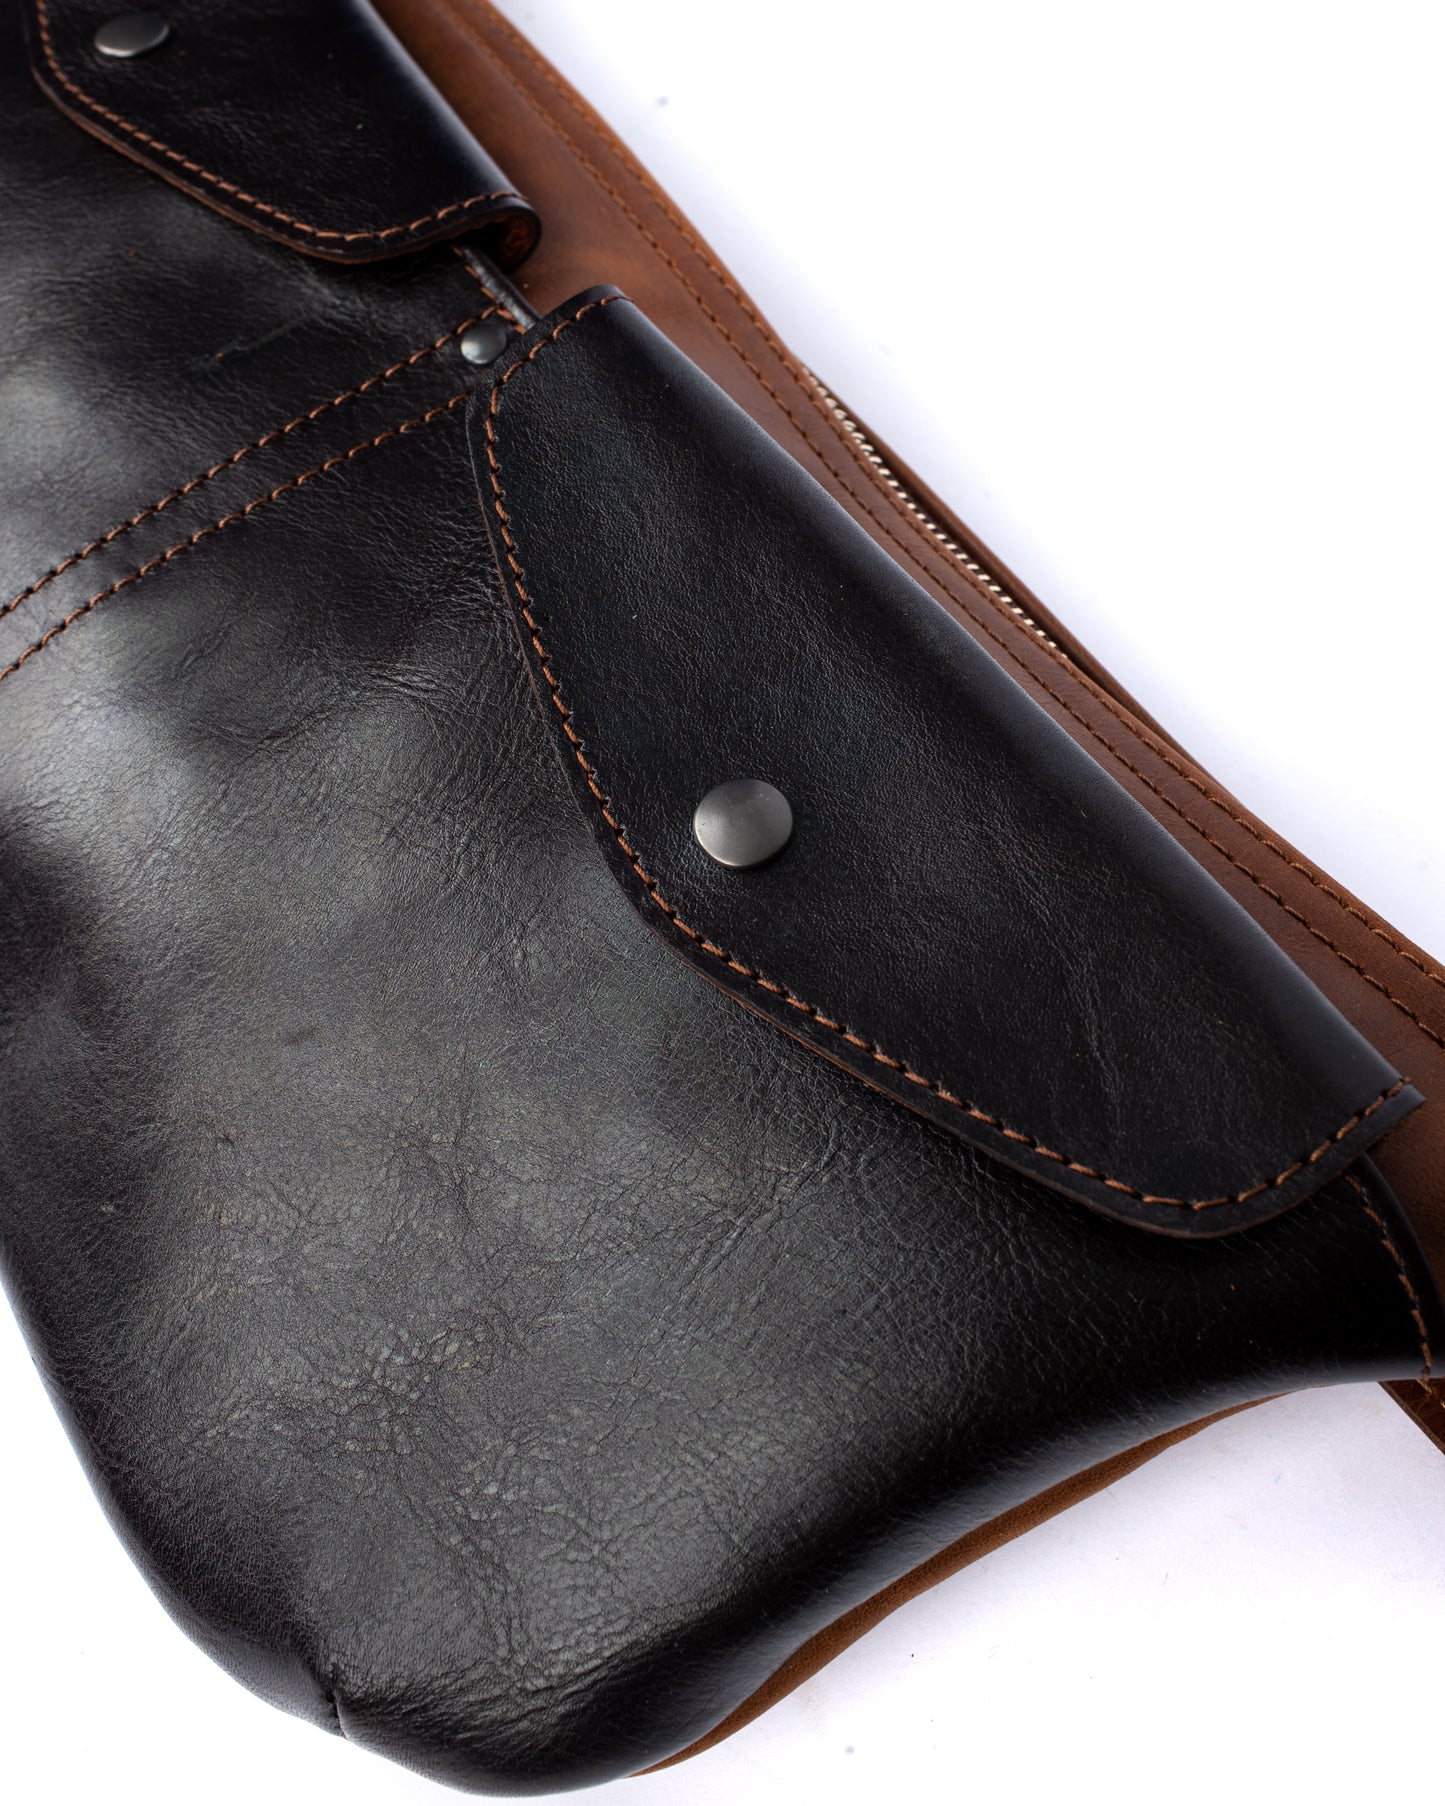 Ryker sling bag oiled 2 tone brown